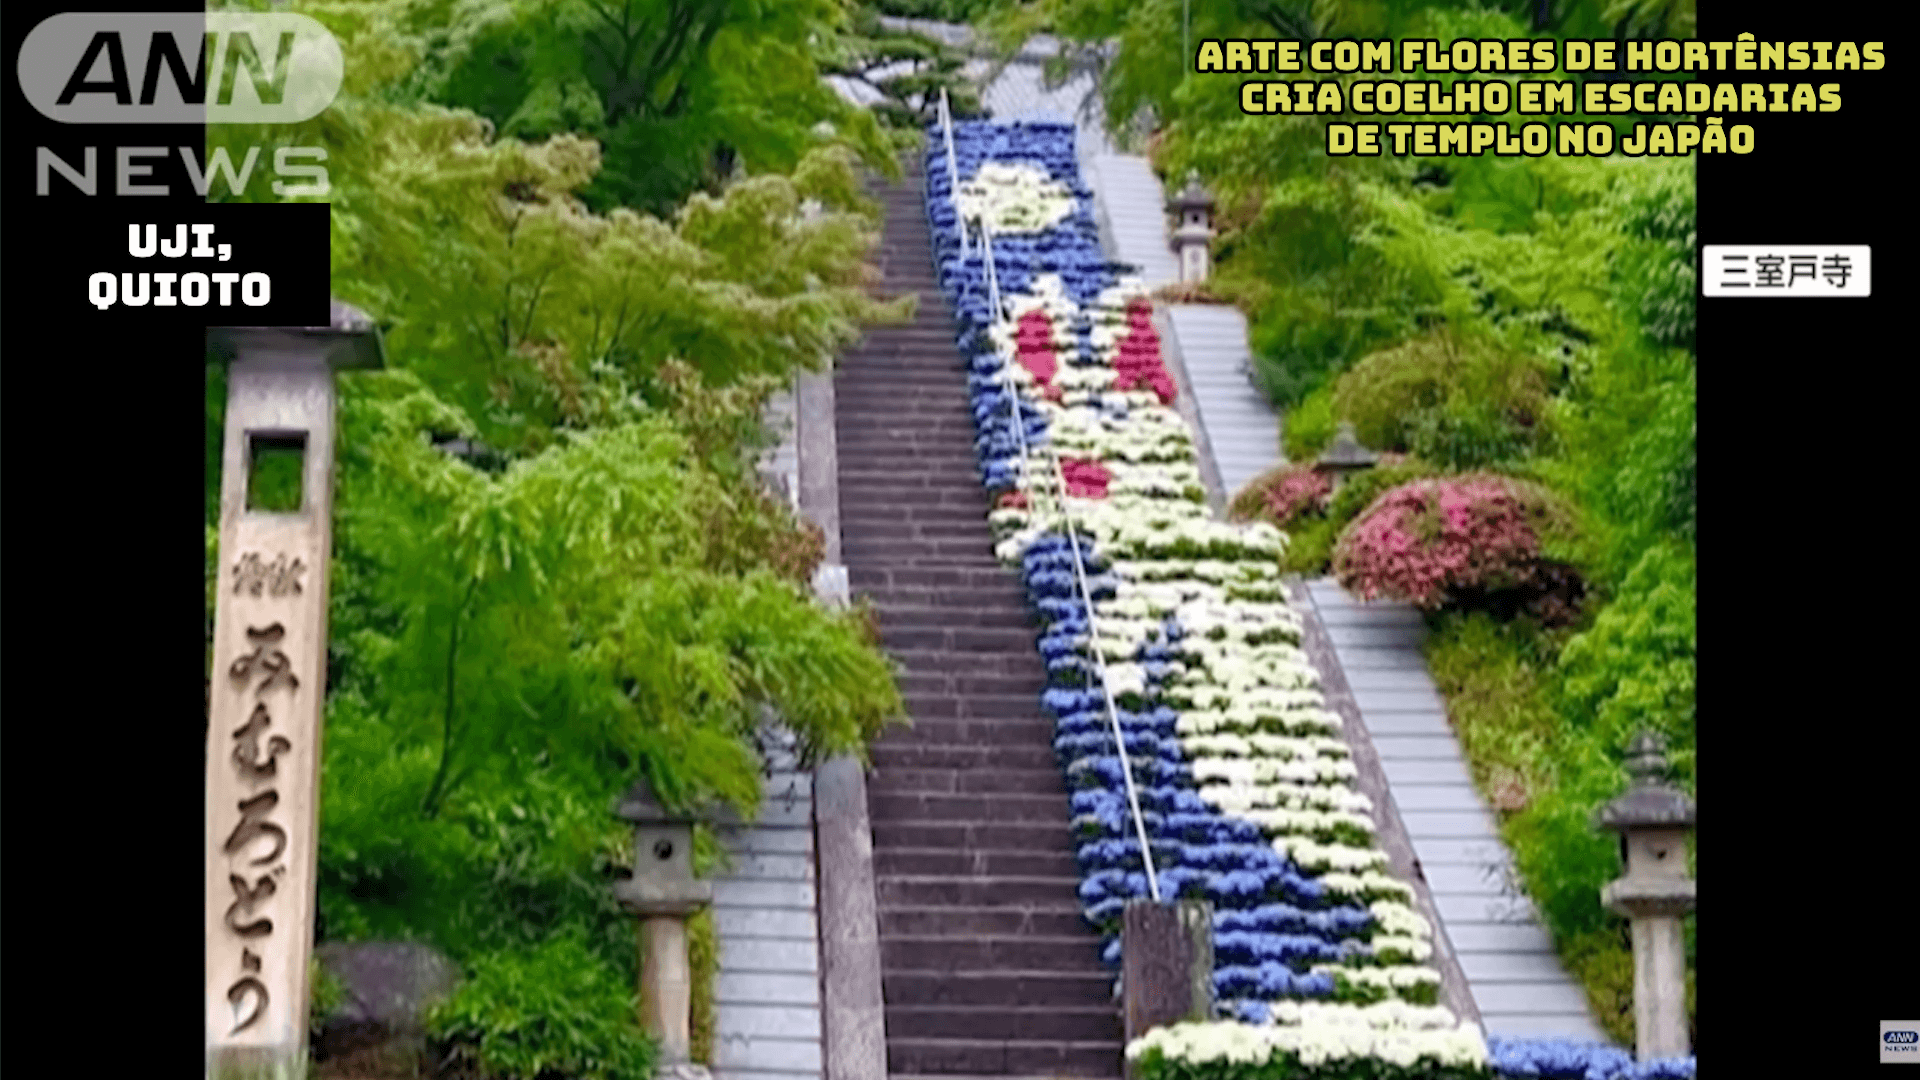 Arte com flores de hortênsias cria coelho em escadarias de templo no Japão 